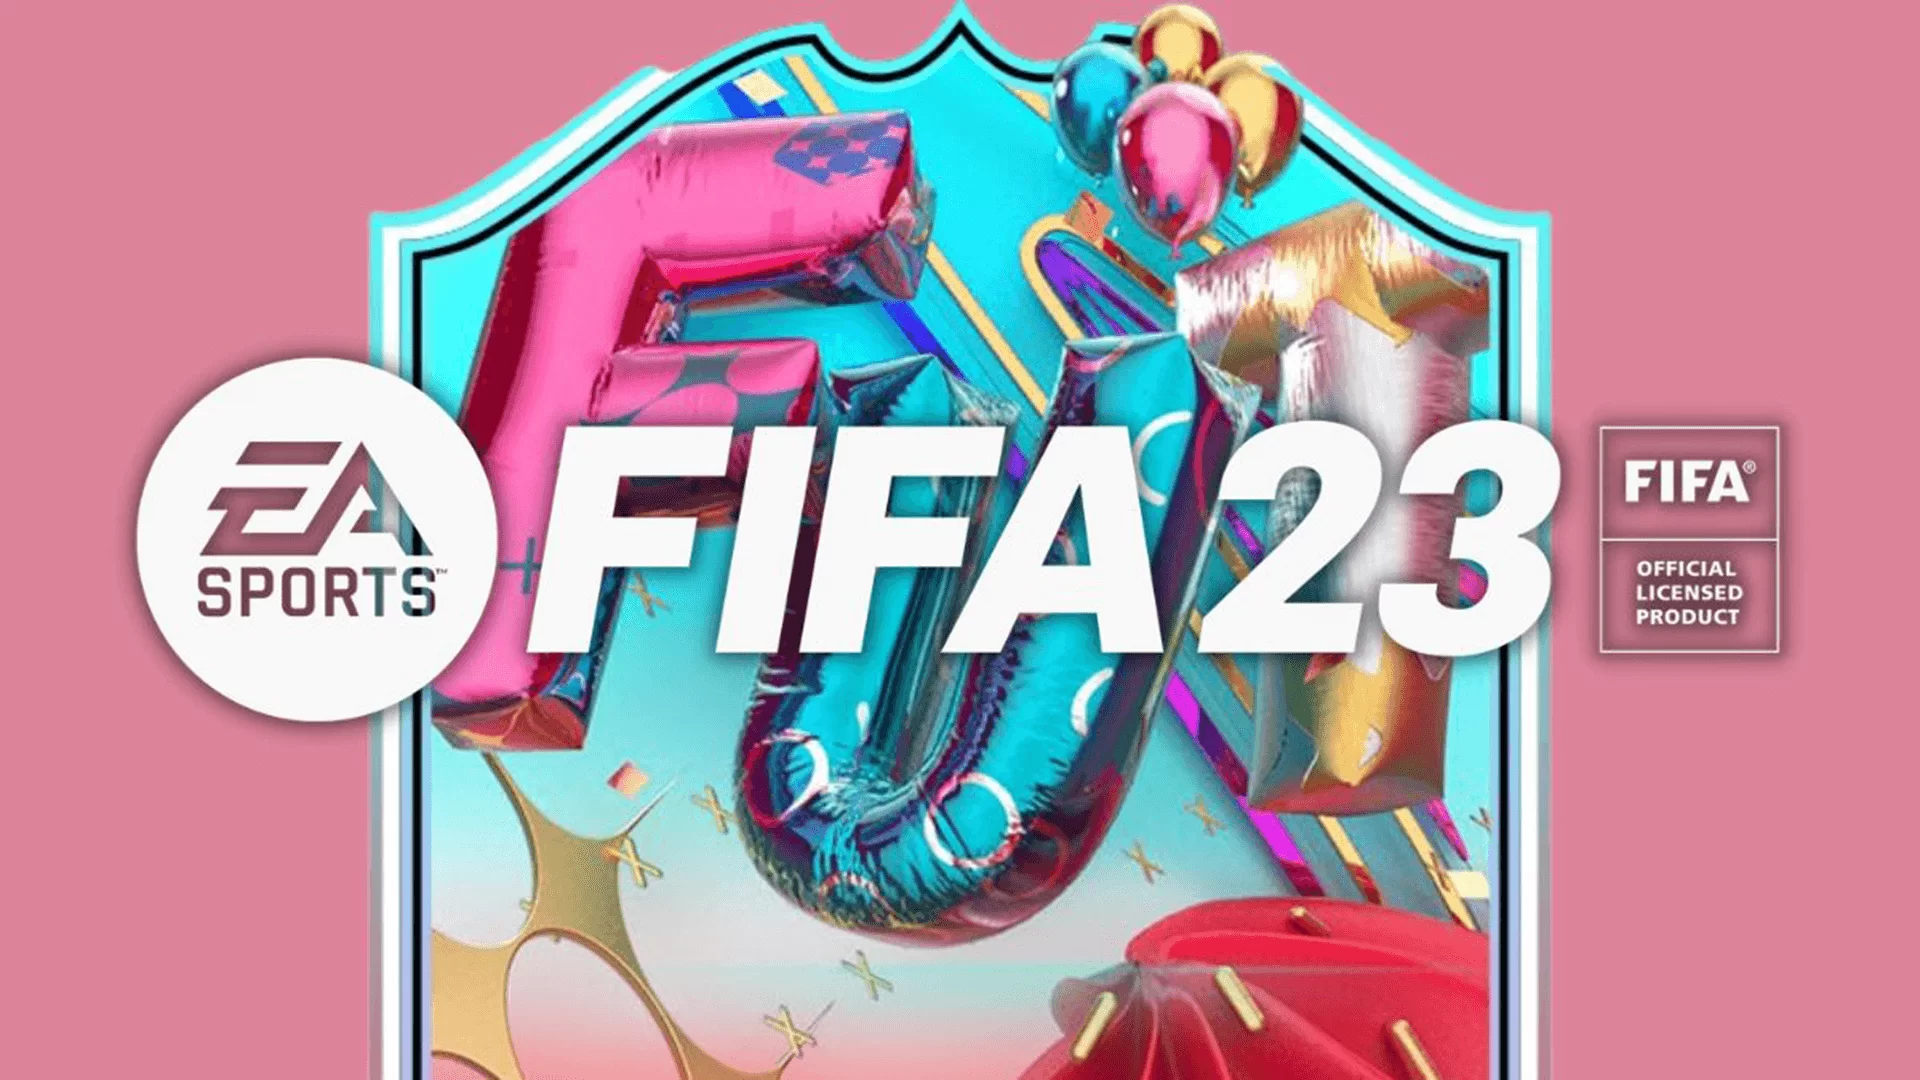 FIFA 23: FUT Birthday Promo Only Until Tomorrow March 31